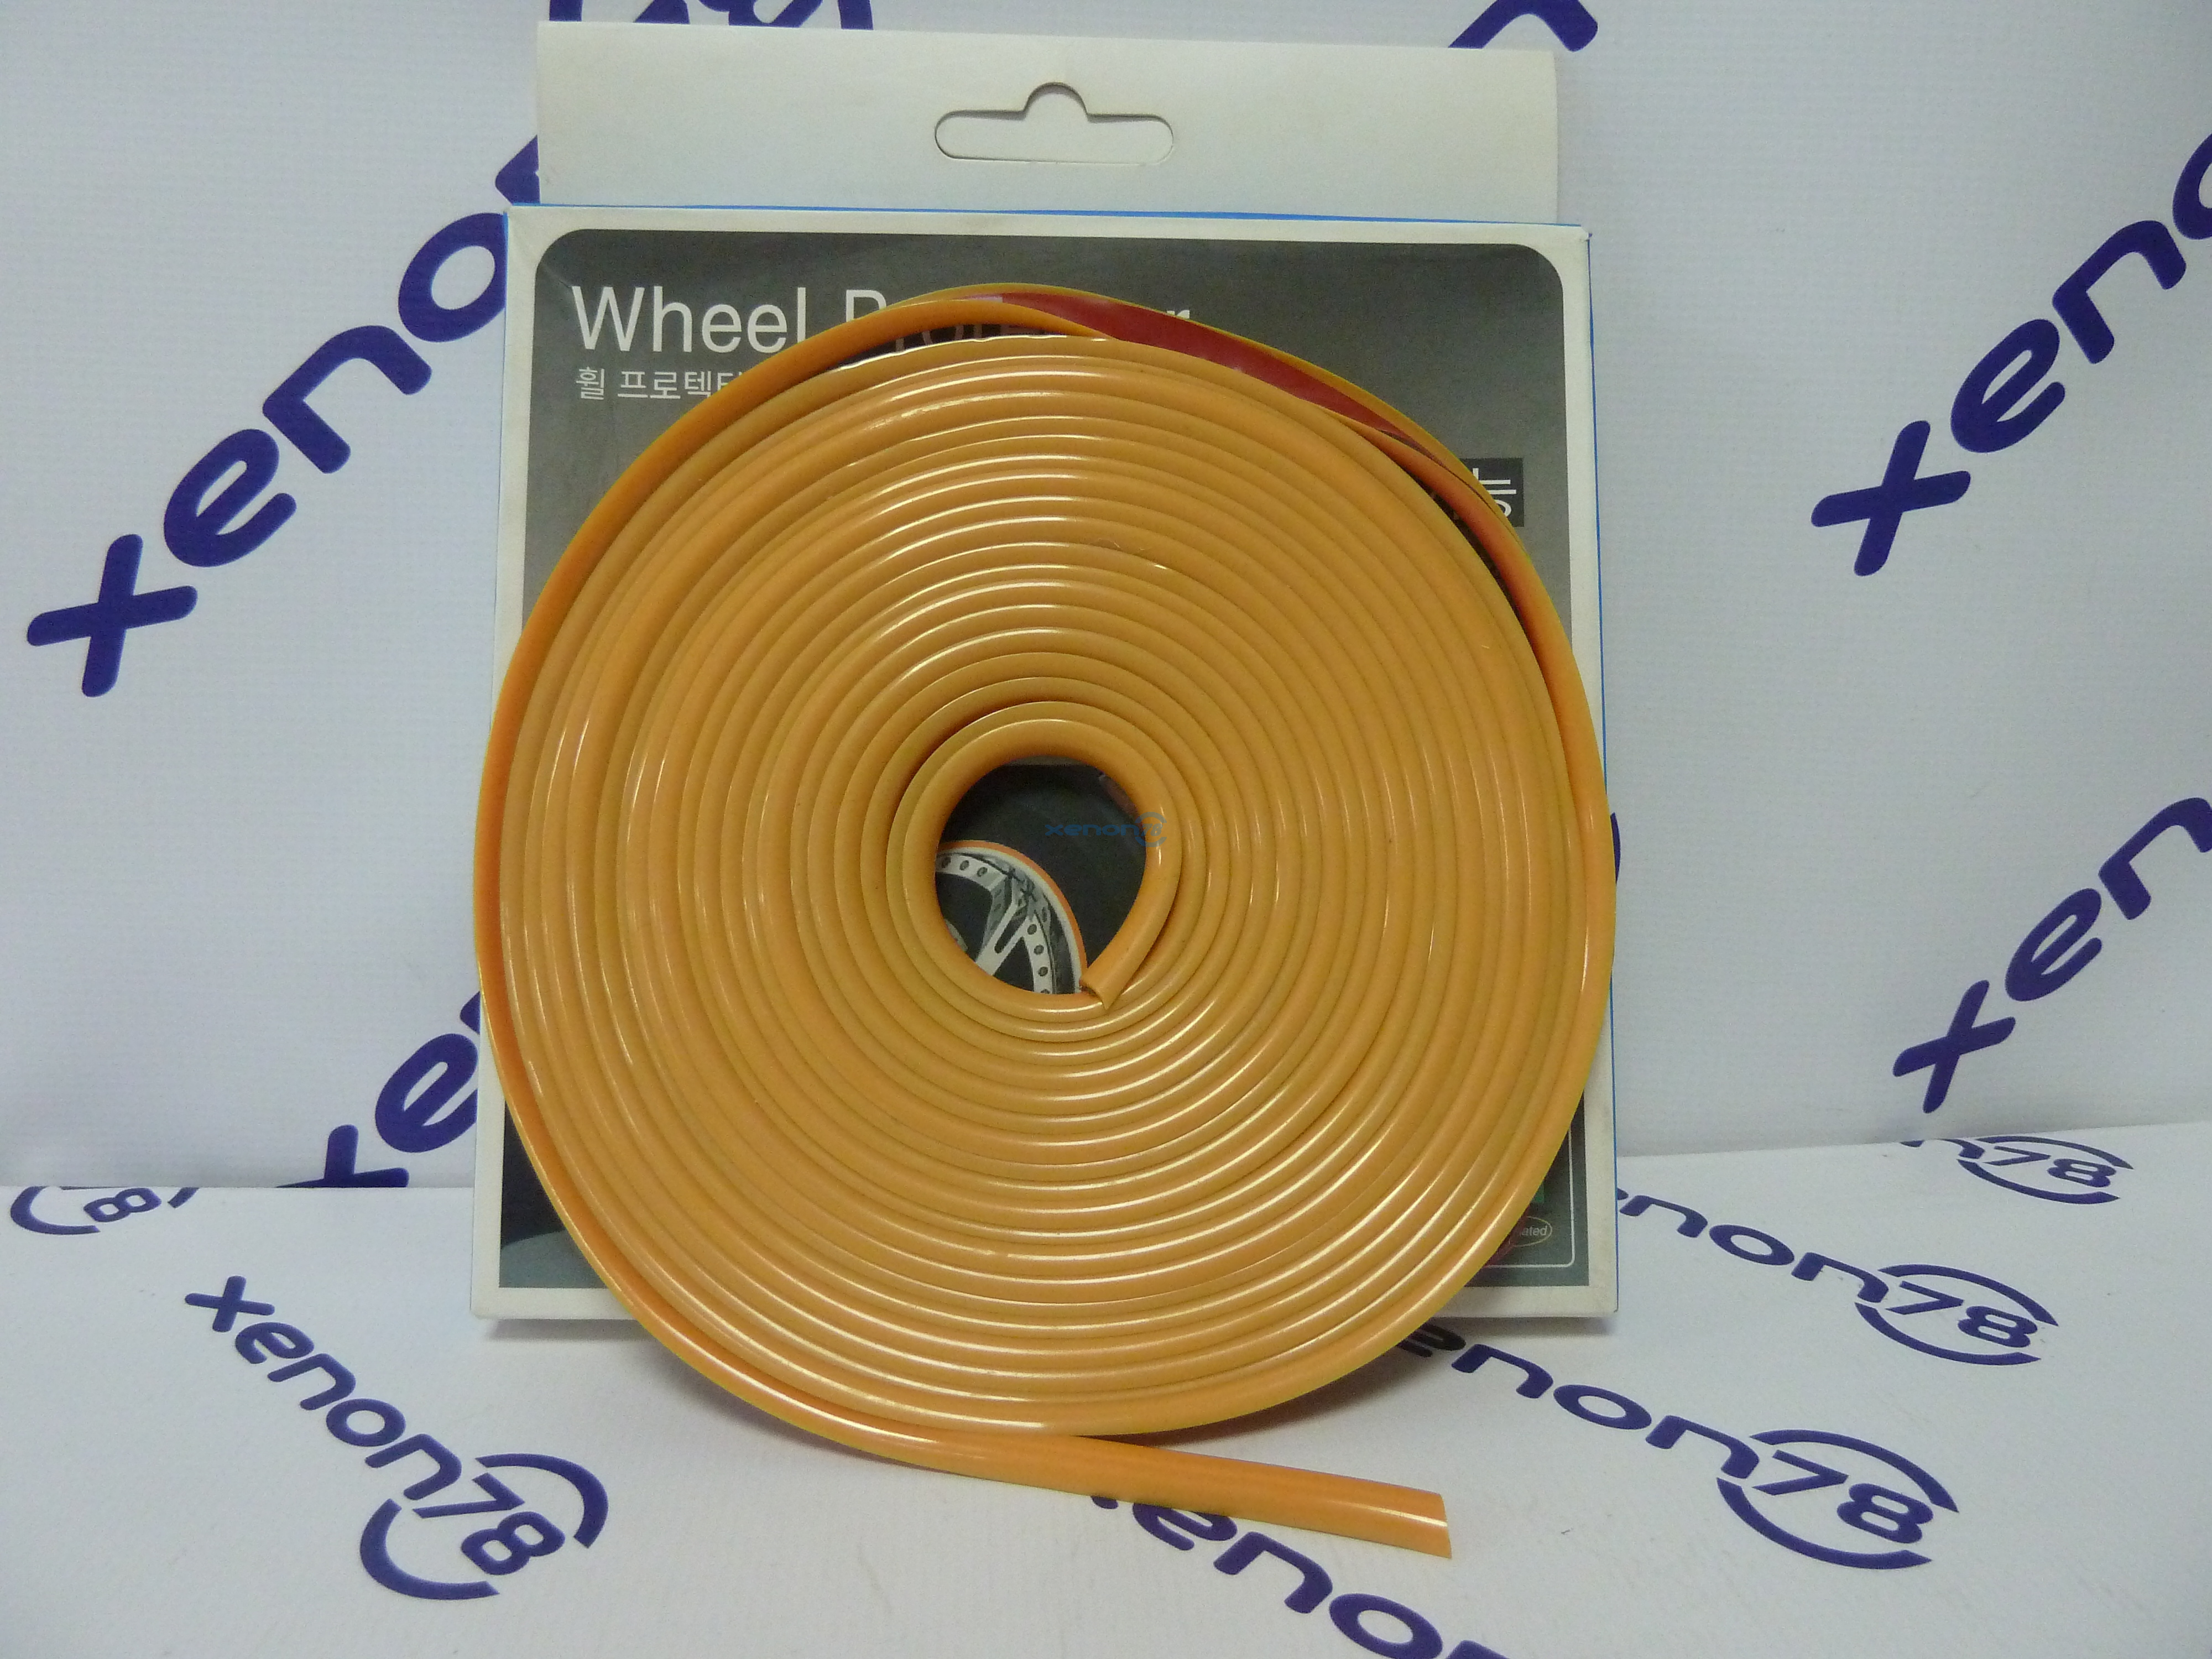 Защитная тюнинг-лента - ободок для дисков, цвет Оранжевый(Guard Weel)  (длина 6,6м = 5 колёс по 22")